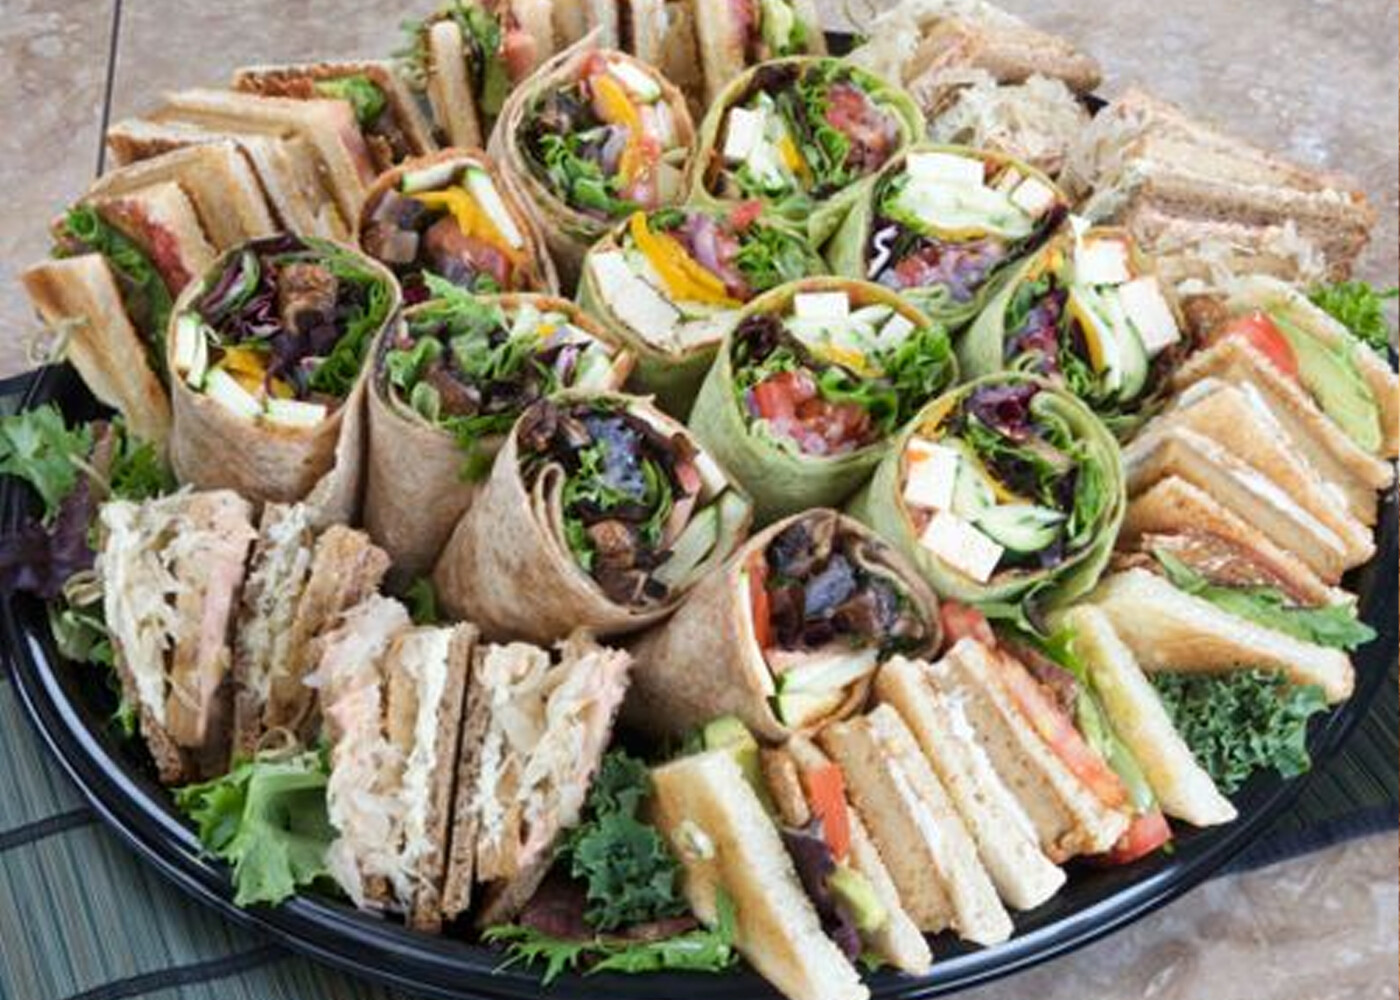 images of sandwich platters